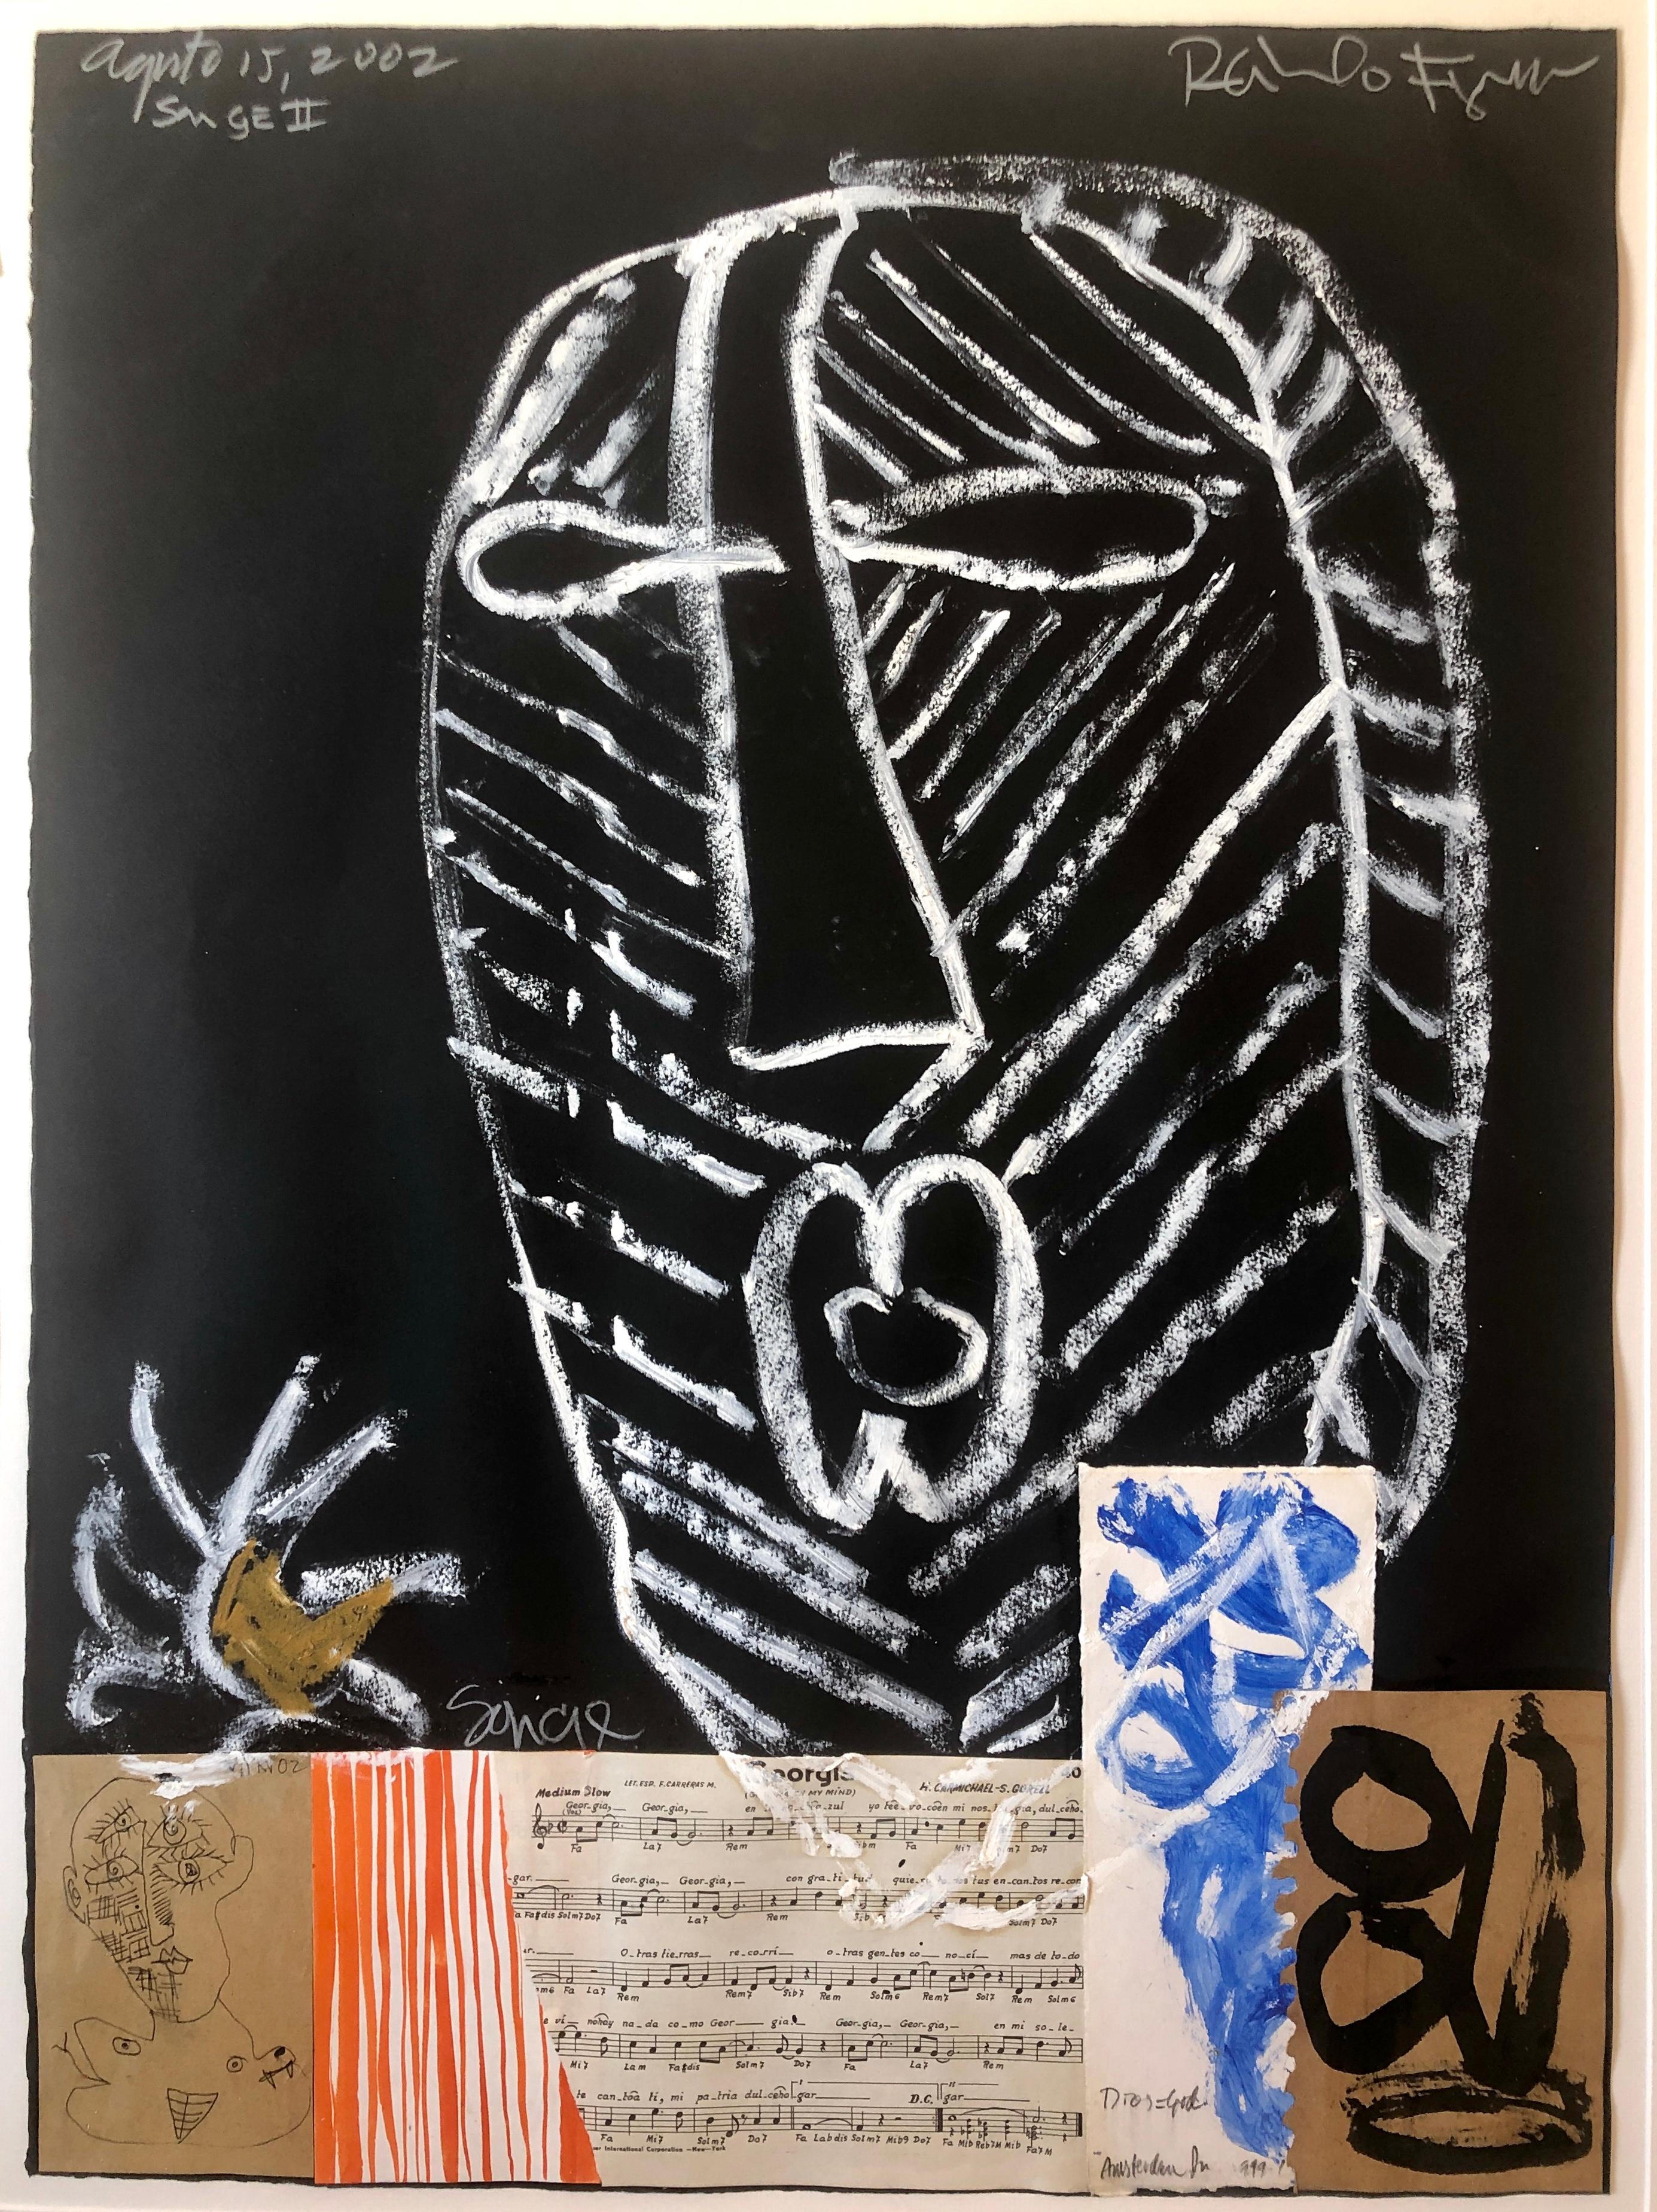 Puerto Ricanischer modernistischer Malermeister Figueroa in Mischtechnik, Collage mit Musiknotizen (Schwarz), Abstract Painting, von Raimundo Figueroa